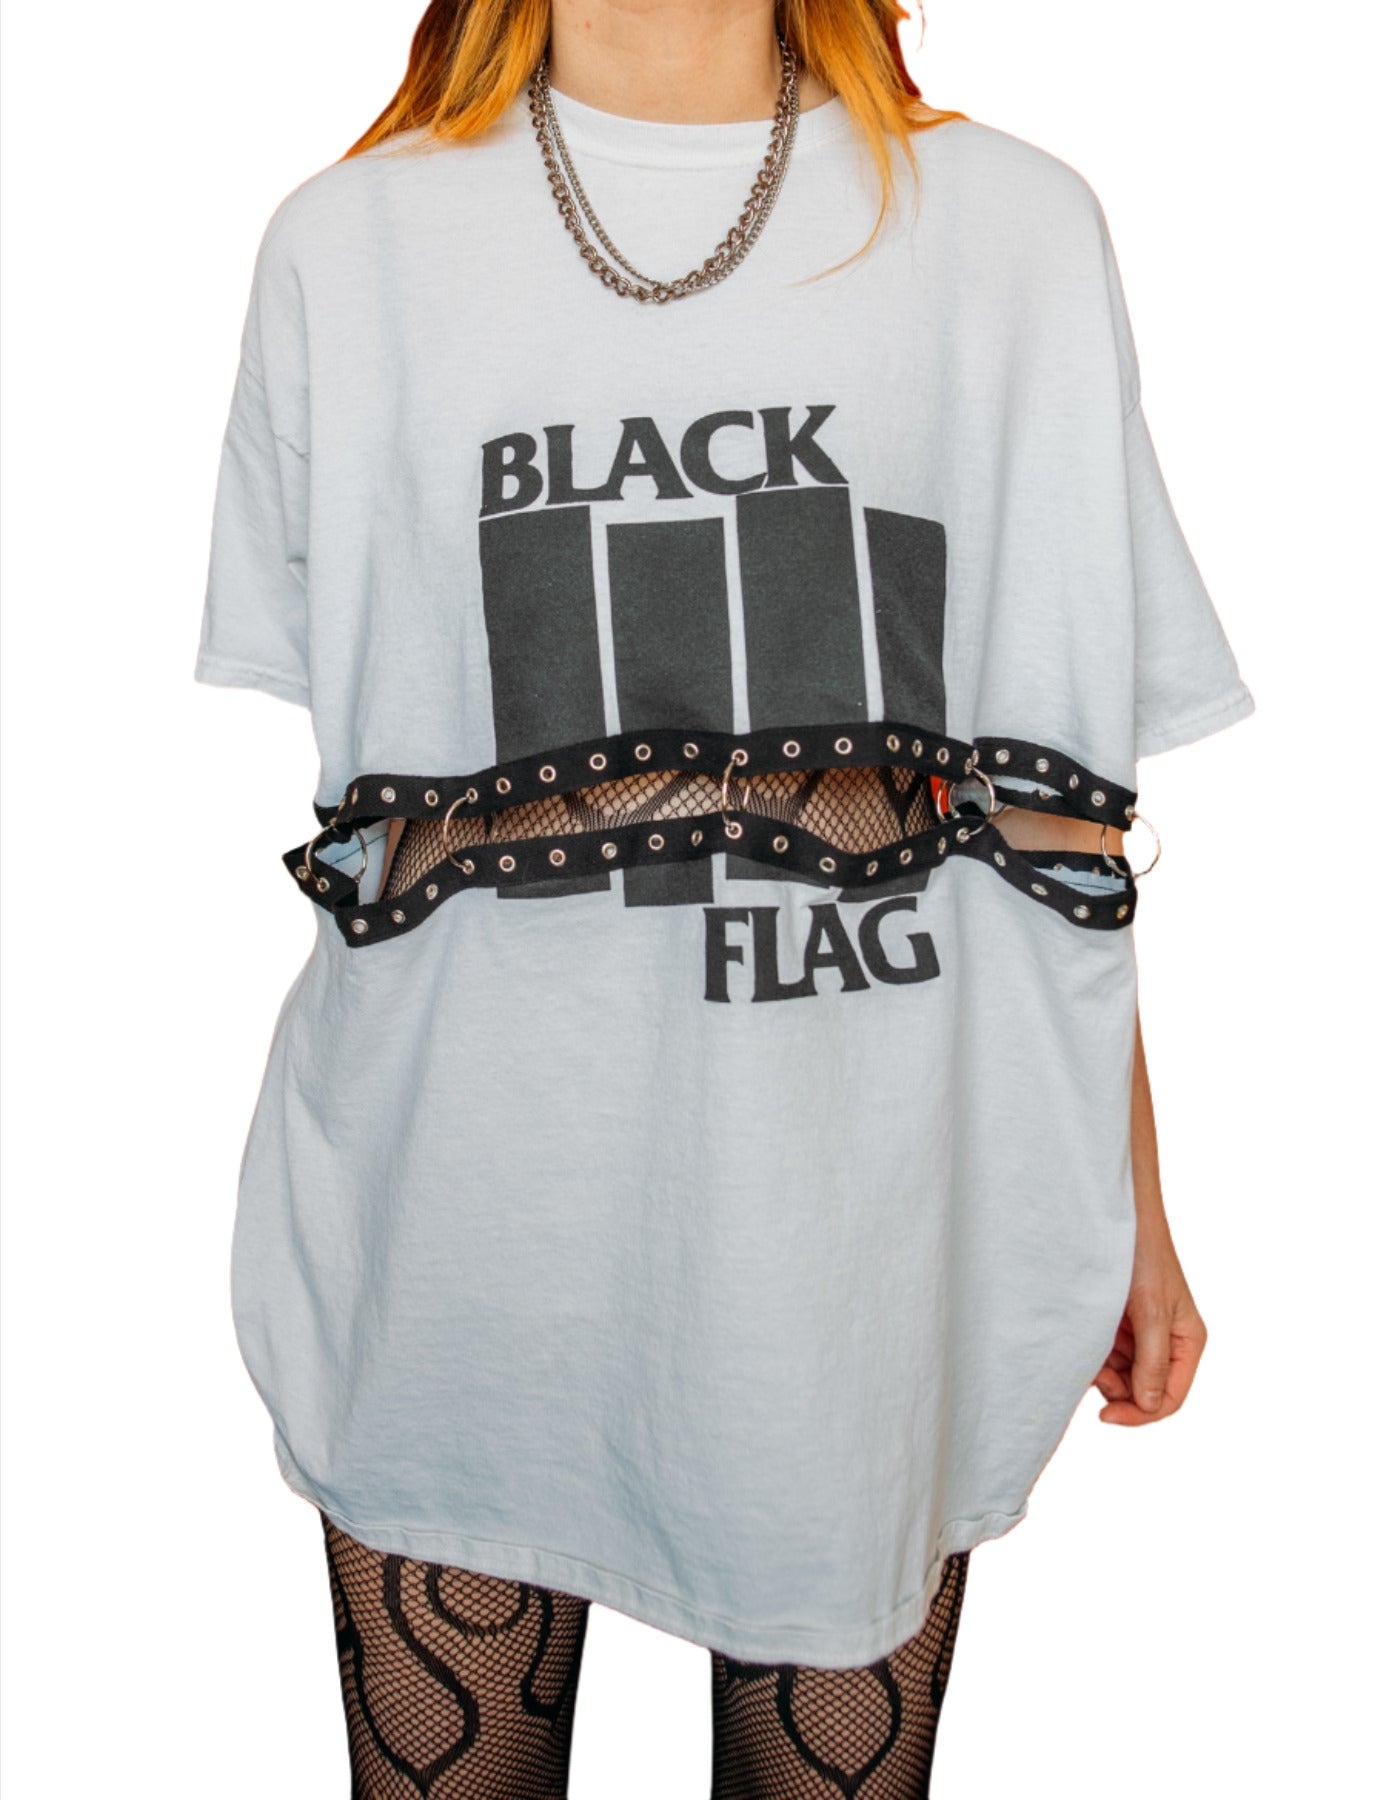 Black Flag Tee